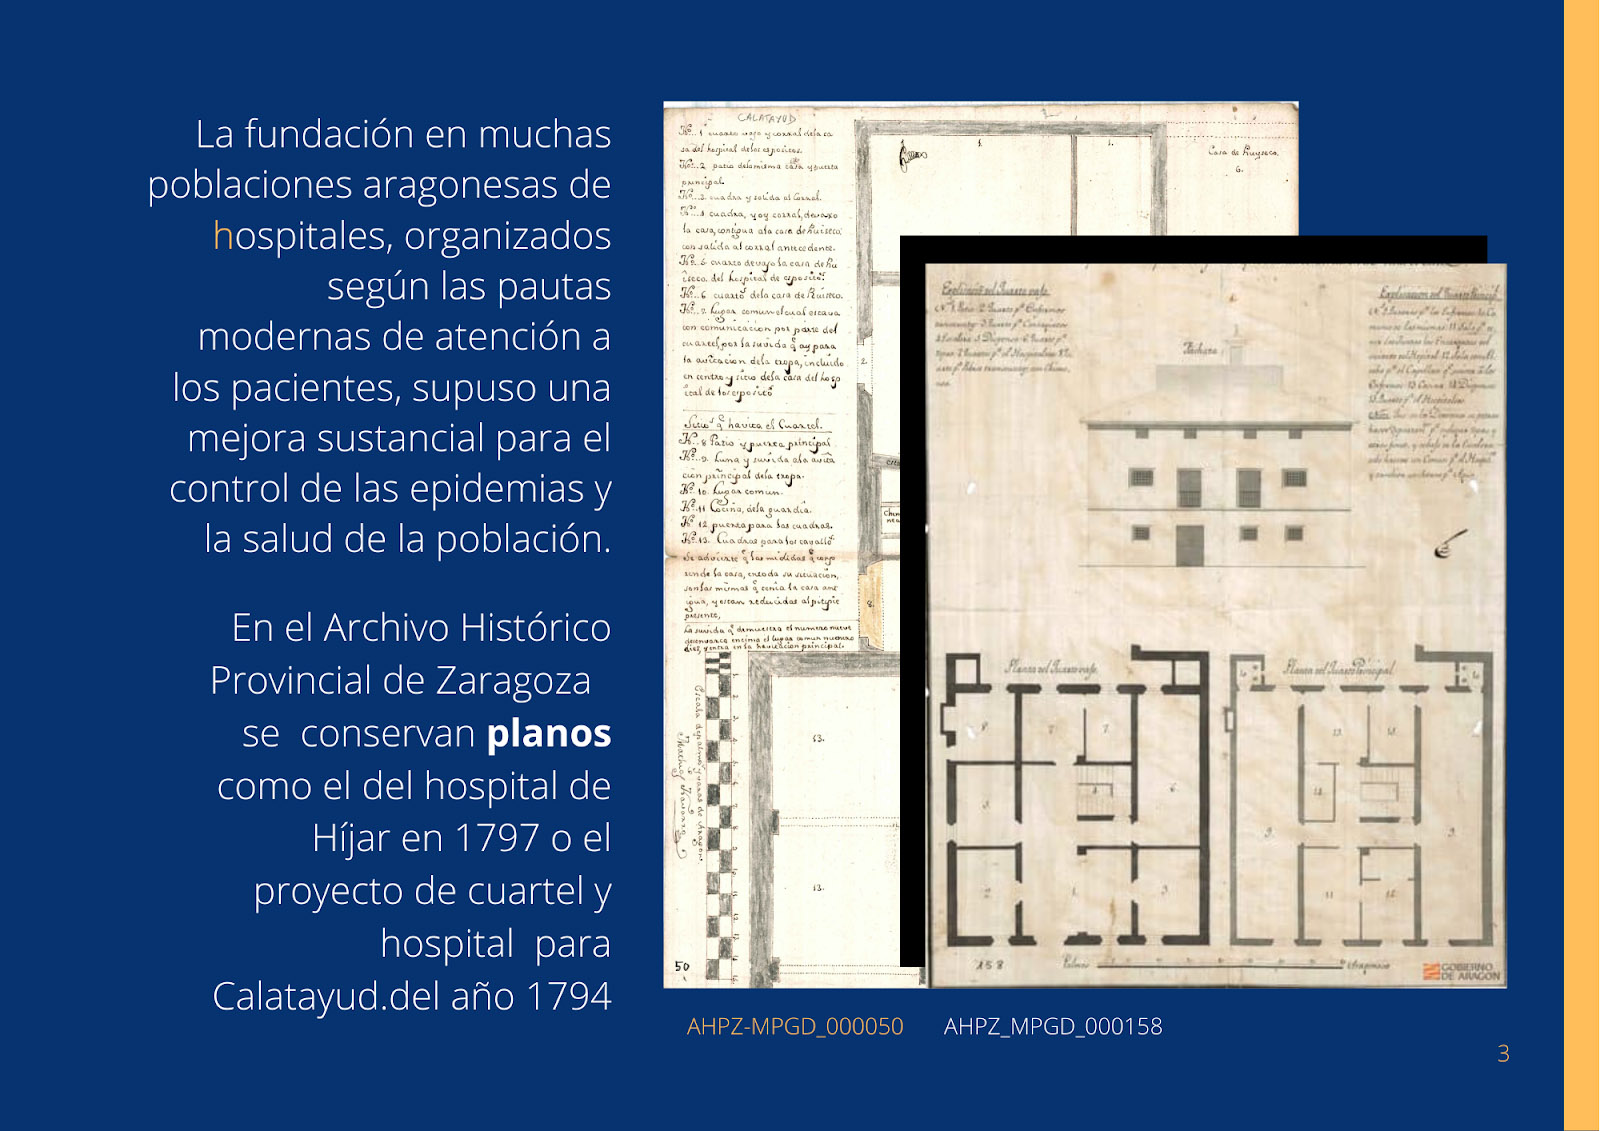 Una de las recientes publicaciones digitales del Archivo Histórico Provincial de Zaragoza